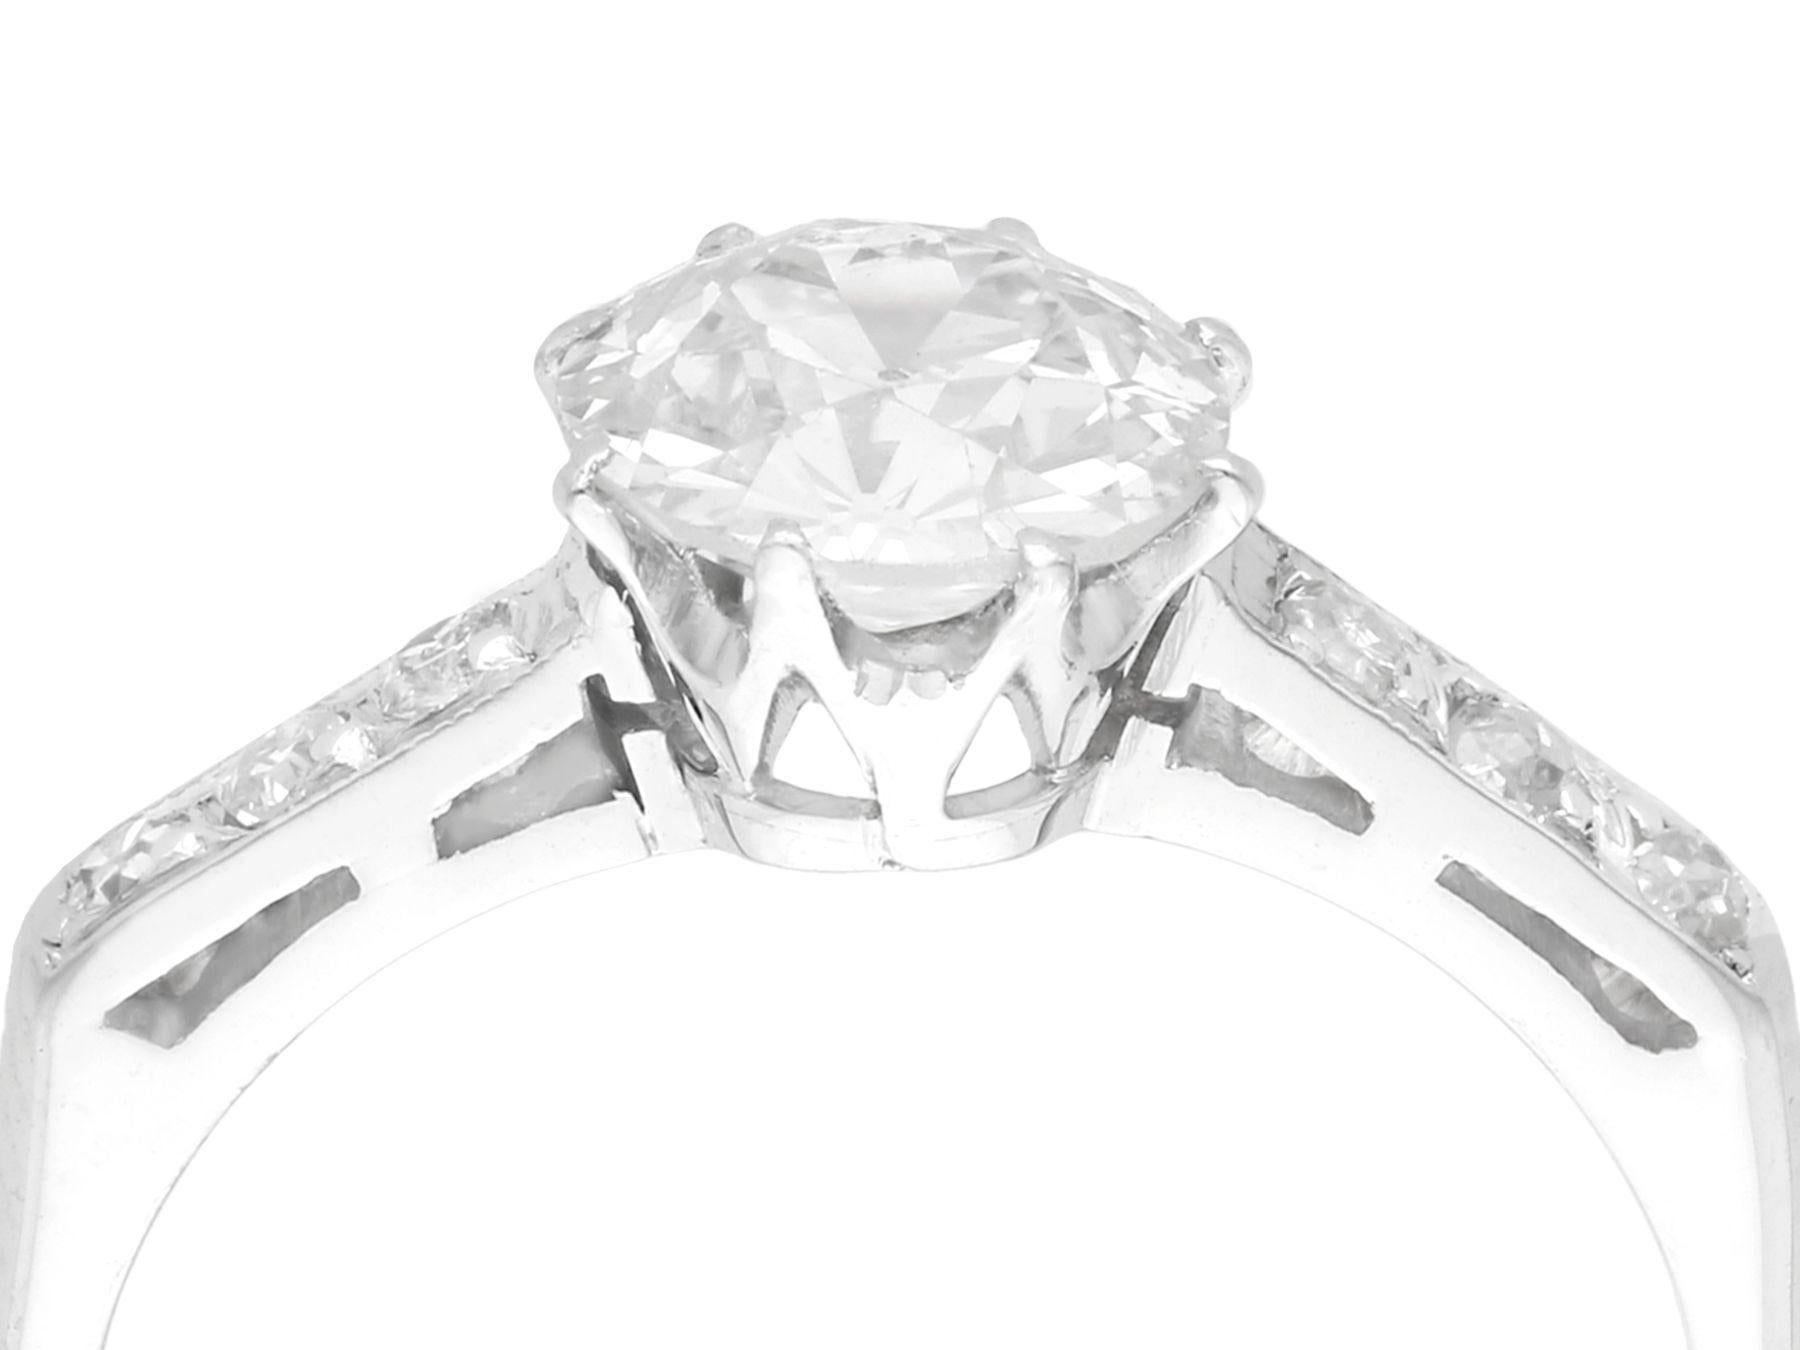 Ein feiner und beeindruckender Vintage-Ring mit 1,11 Karat Diamant (insgesamt) und Platin-Solitär; Teil unserer vielfältigen Diamantschmuck/Estate-Schmuck-Kollektionen.

Dieser schöne und beeindruckende Solitär-Diamantring im Vintage-Stil ist aus